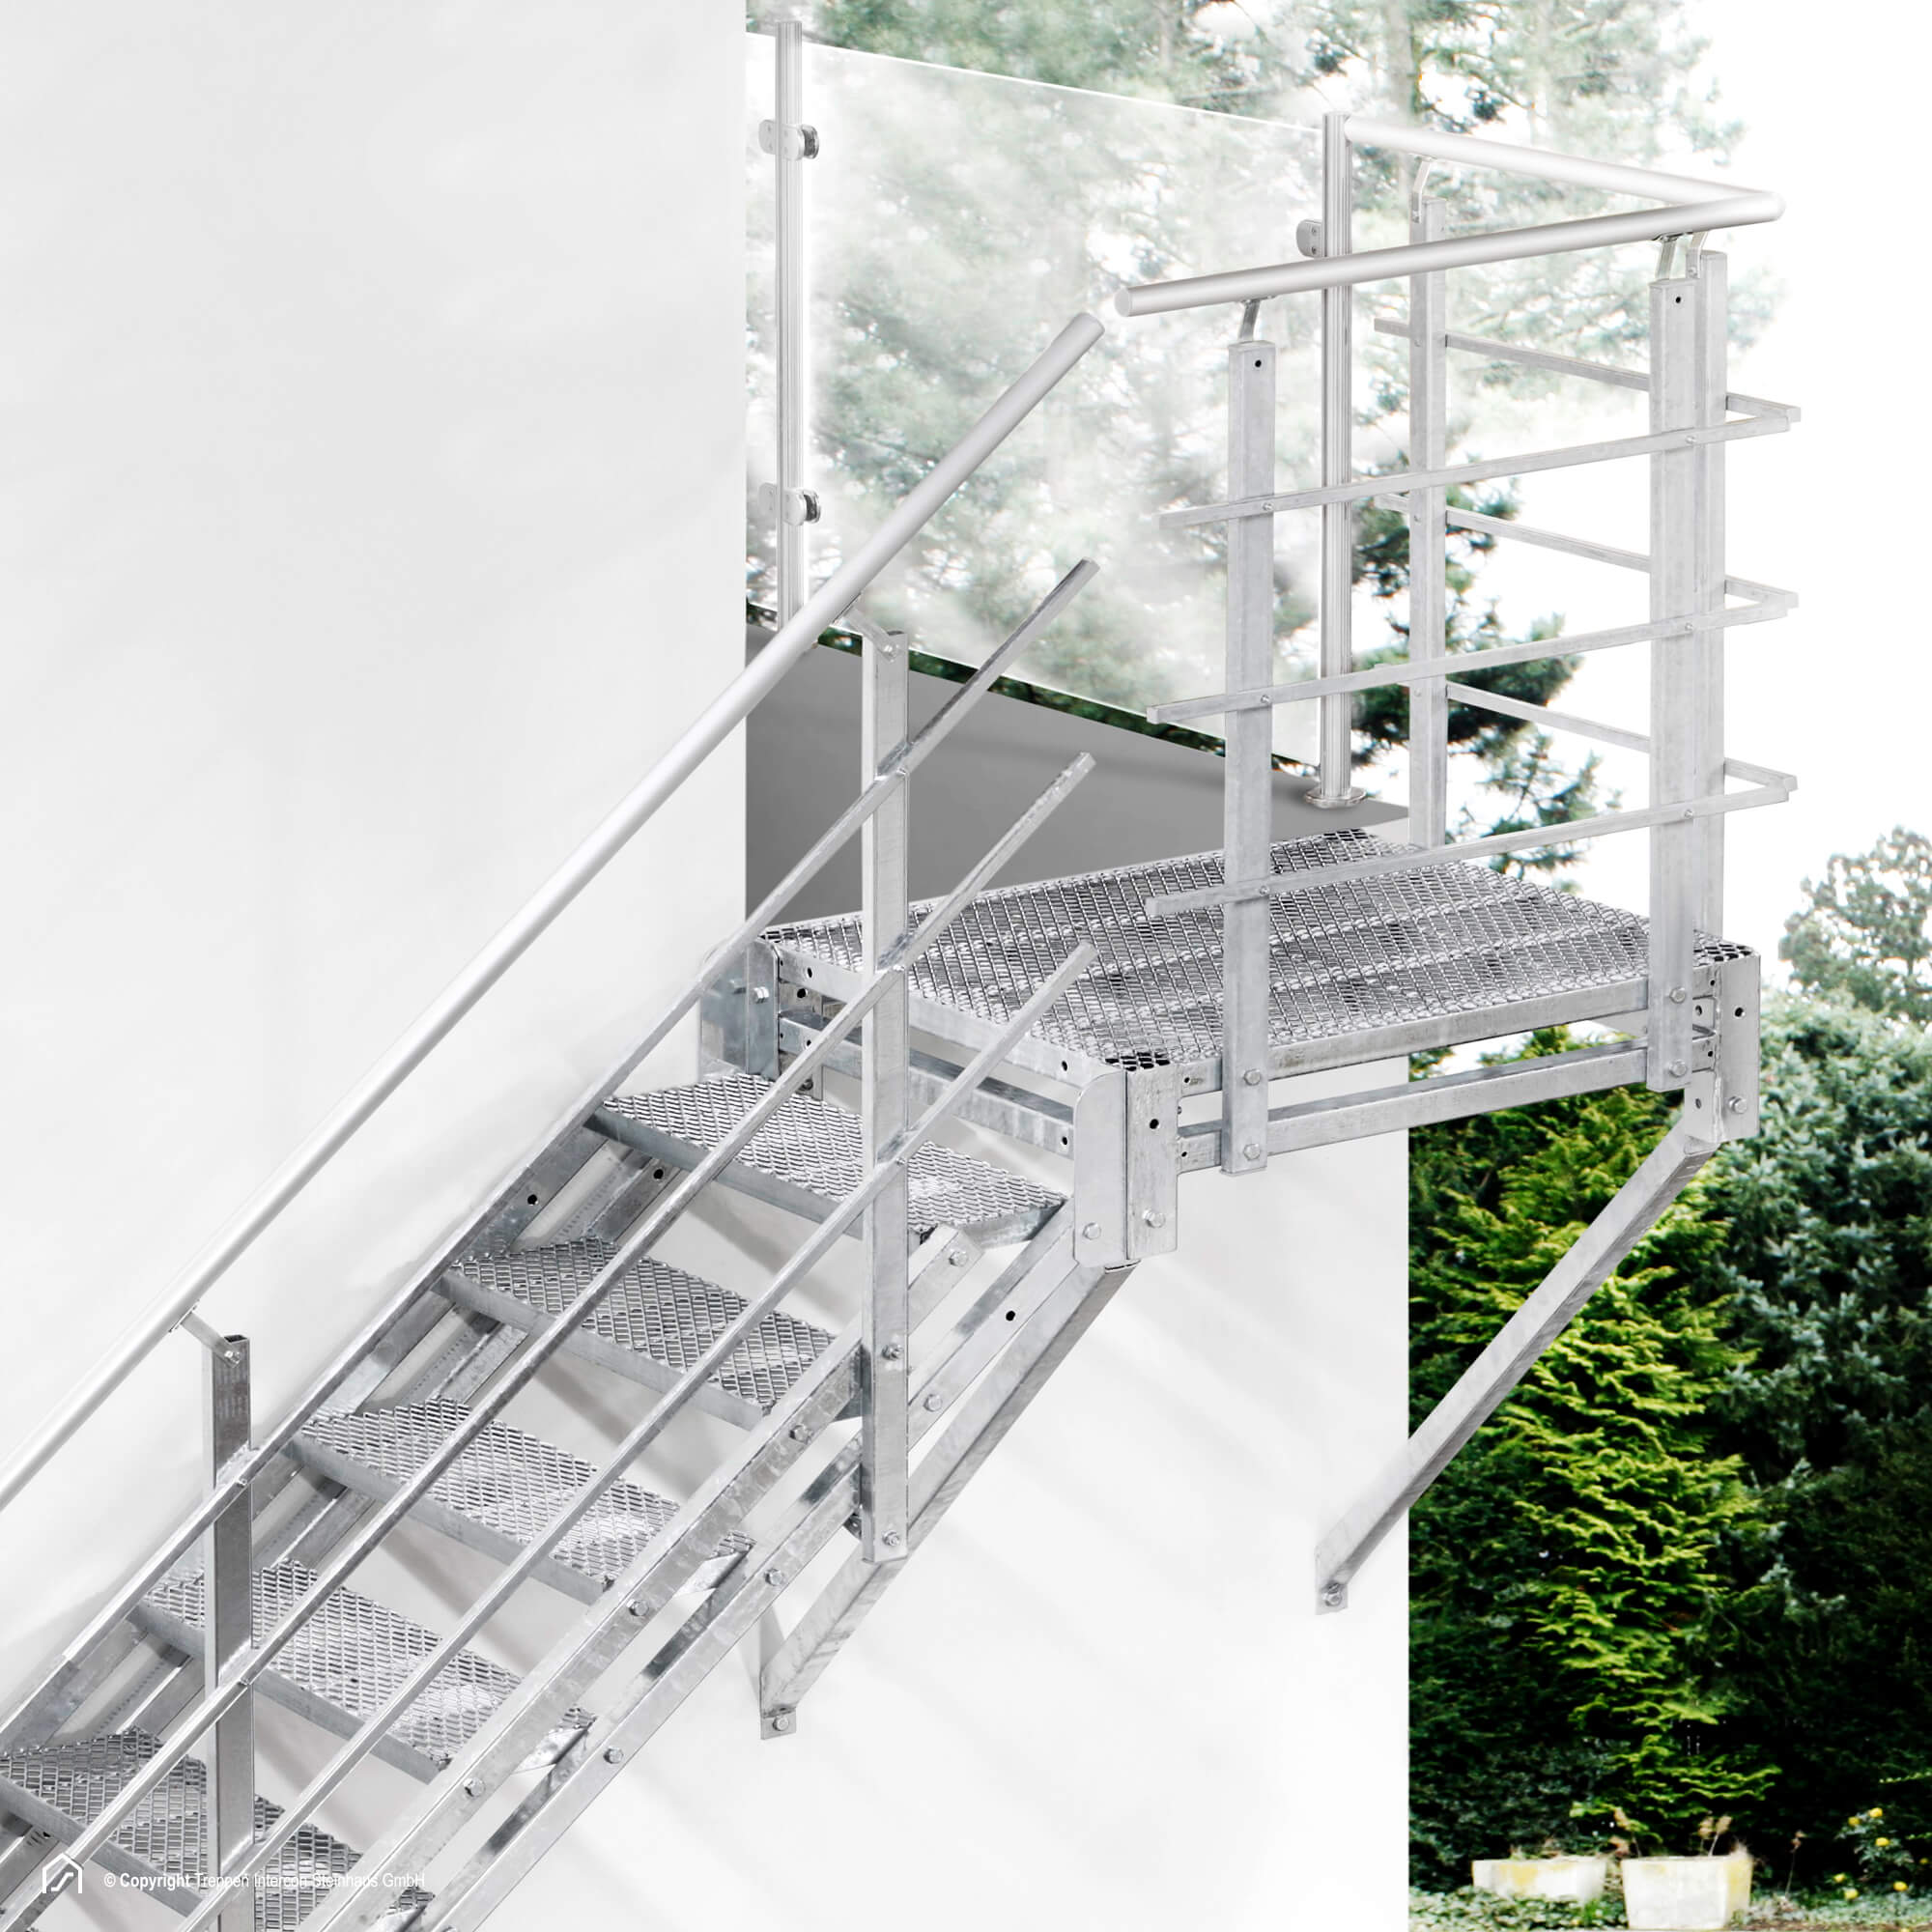 Außentreppe 14 Stufen 90 cm Laufbreite einseitiges Geländer rechts feuerverzinkte Stahltreppe mit 900 mm Stufenlänge als montagefertiger Bausatz Anstellhöhe variabel von 233 cm bis 280 cm Gitterroststufe ST1